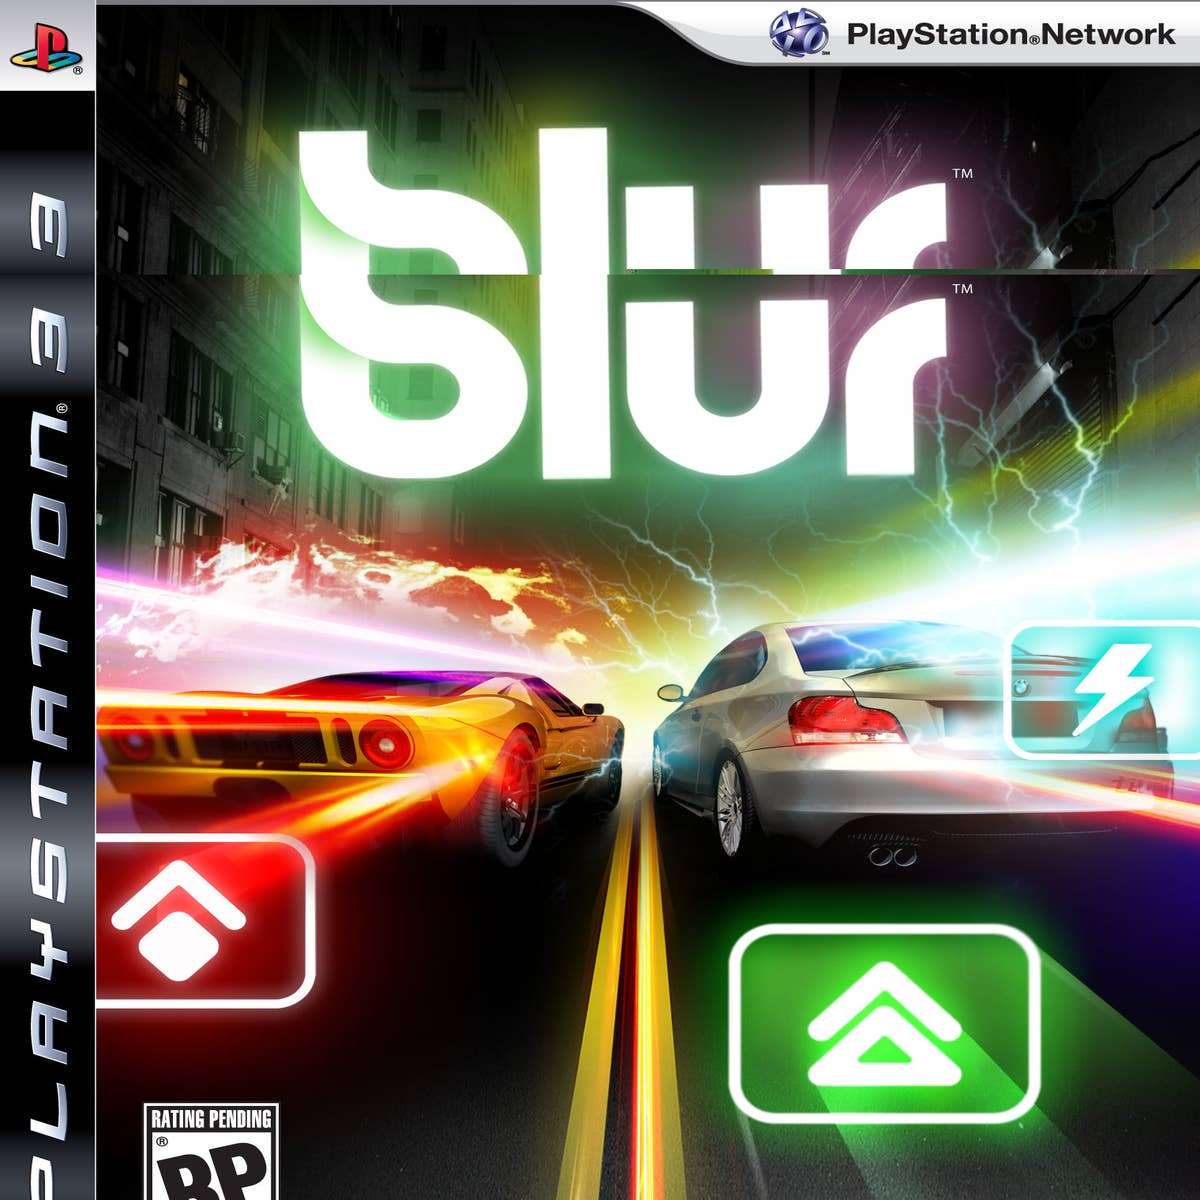 Análises de Blur no Xbox 360 - Nota do Game